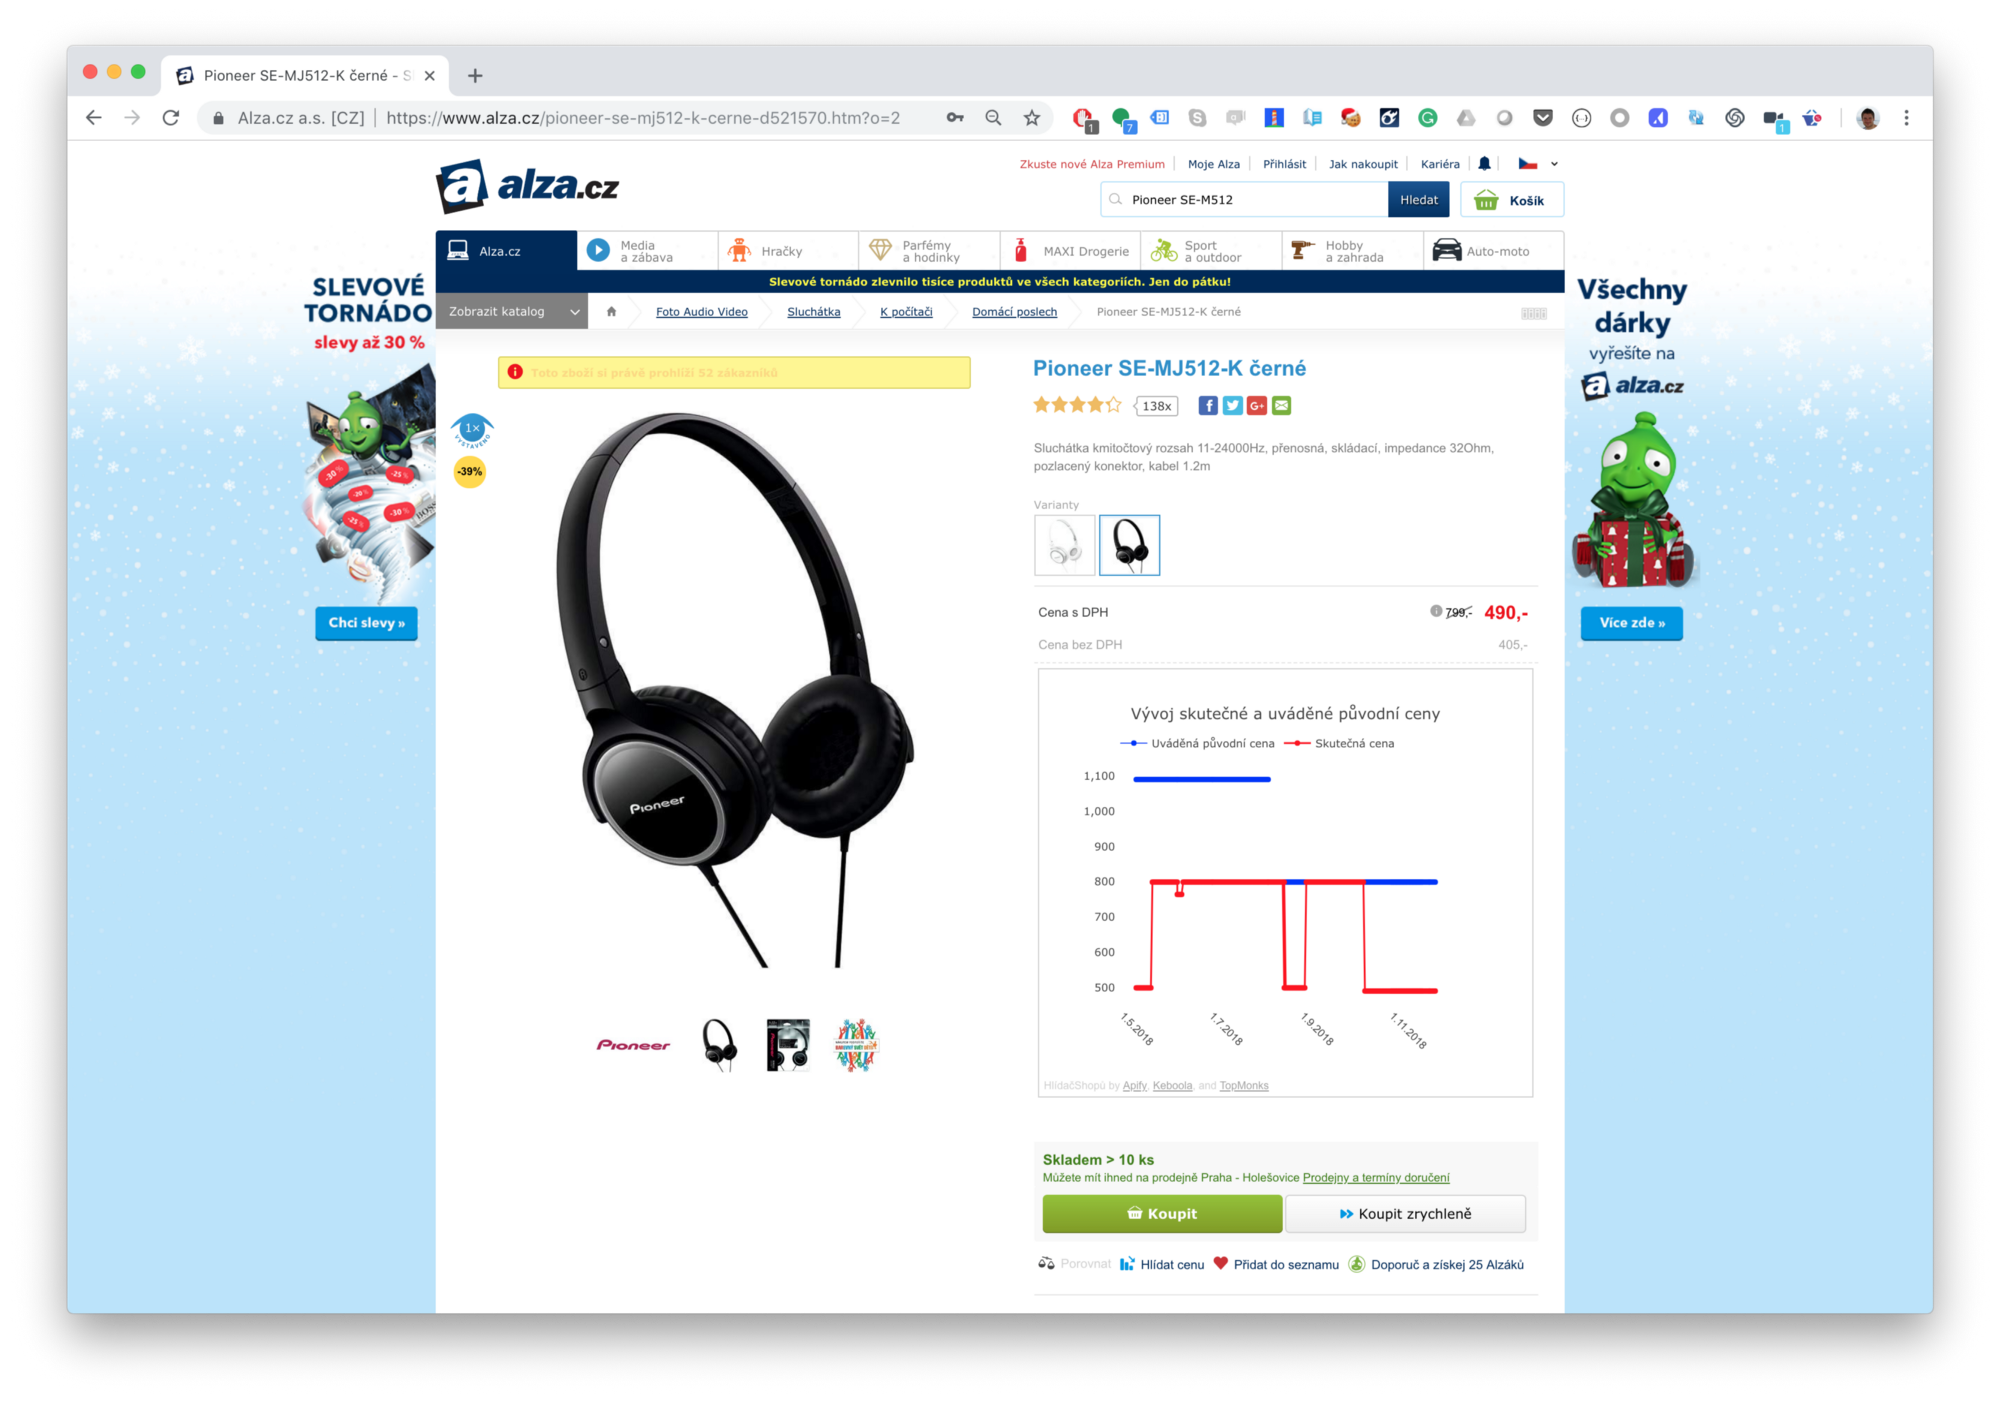 snímek obrazovky sluchátek ve výprodeji na webu alza.cz z 799 Kč na 490 Kč